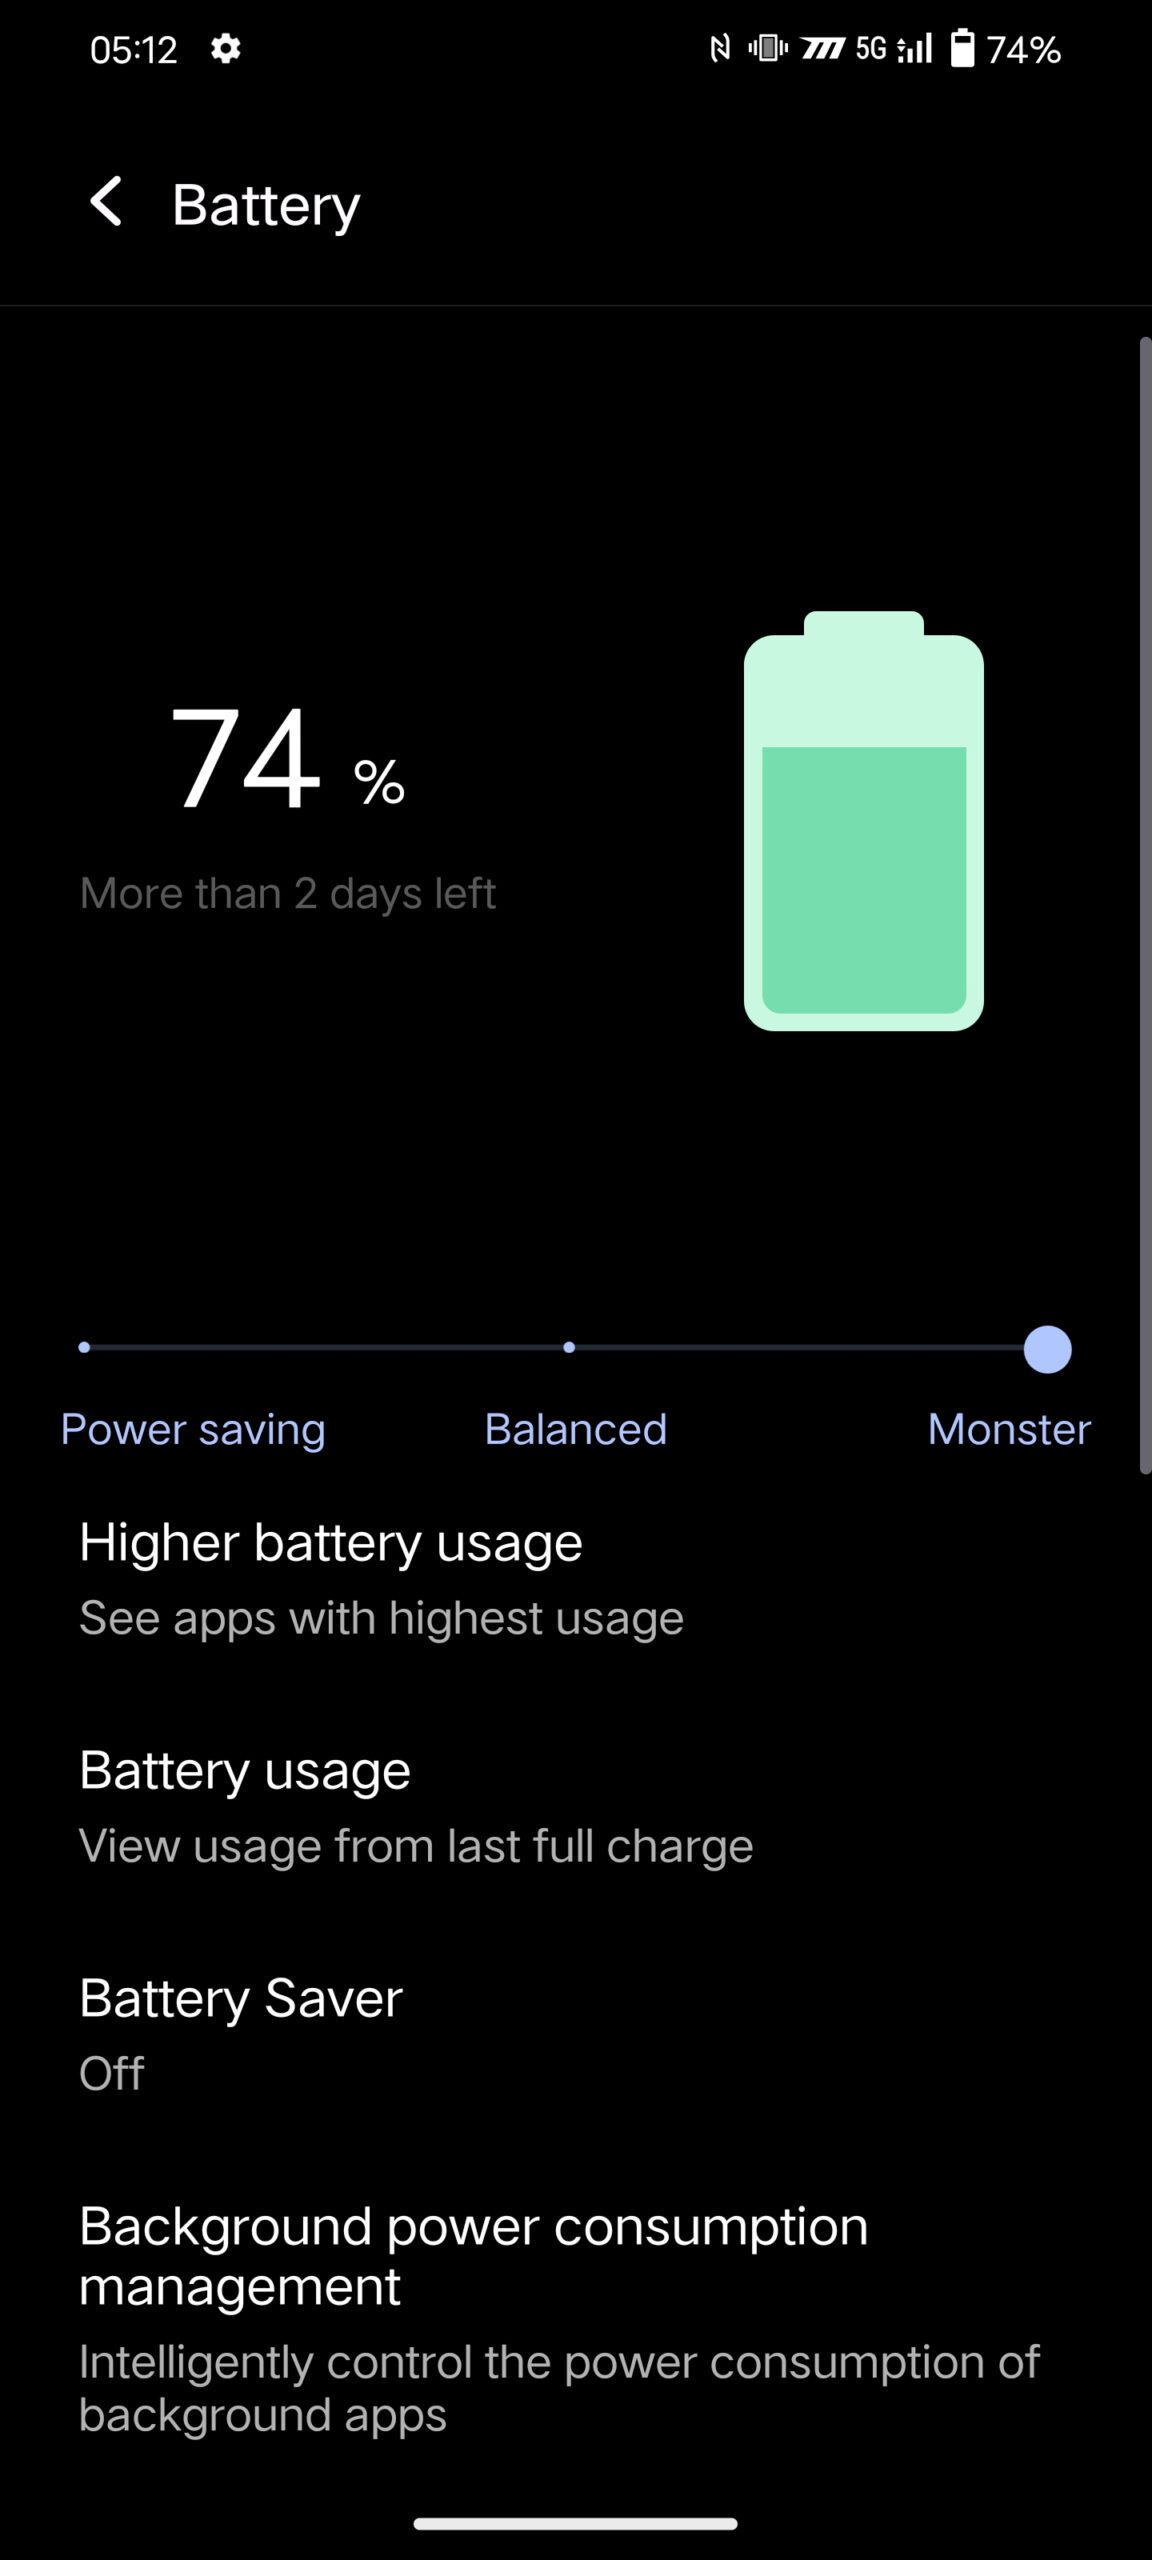 Battery Monster mode